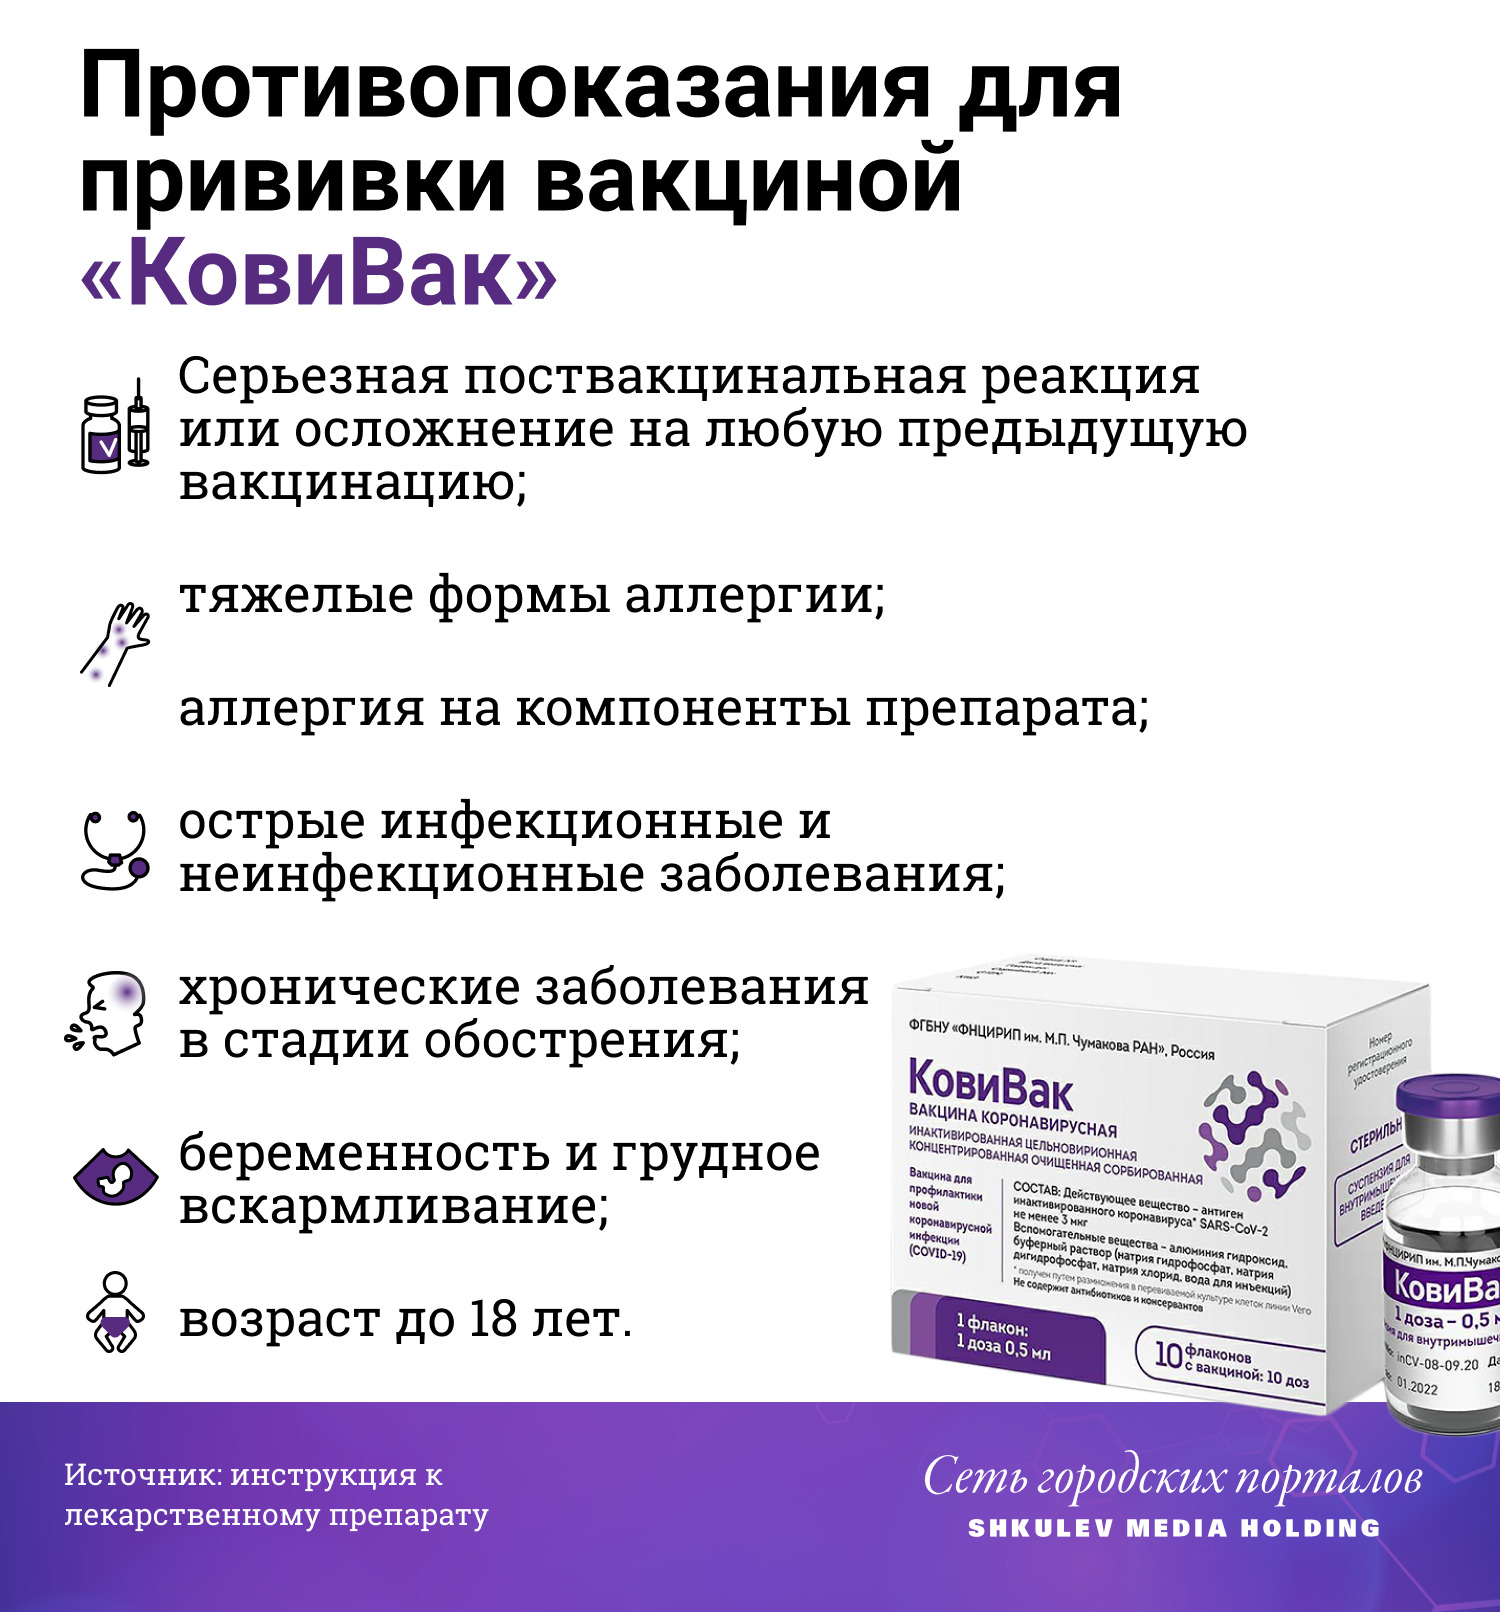 Названы все противопоказания российских вакцин от коронавируса COVID-19 - фото 6